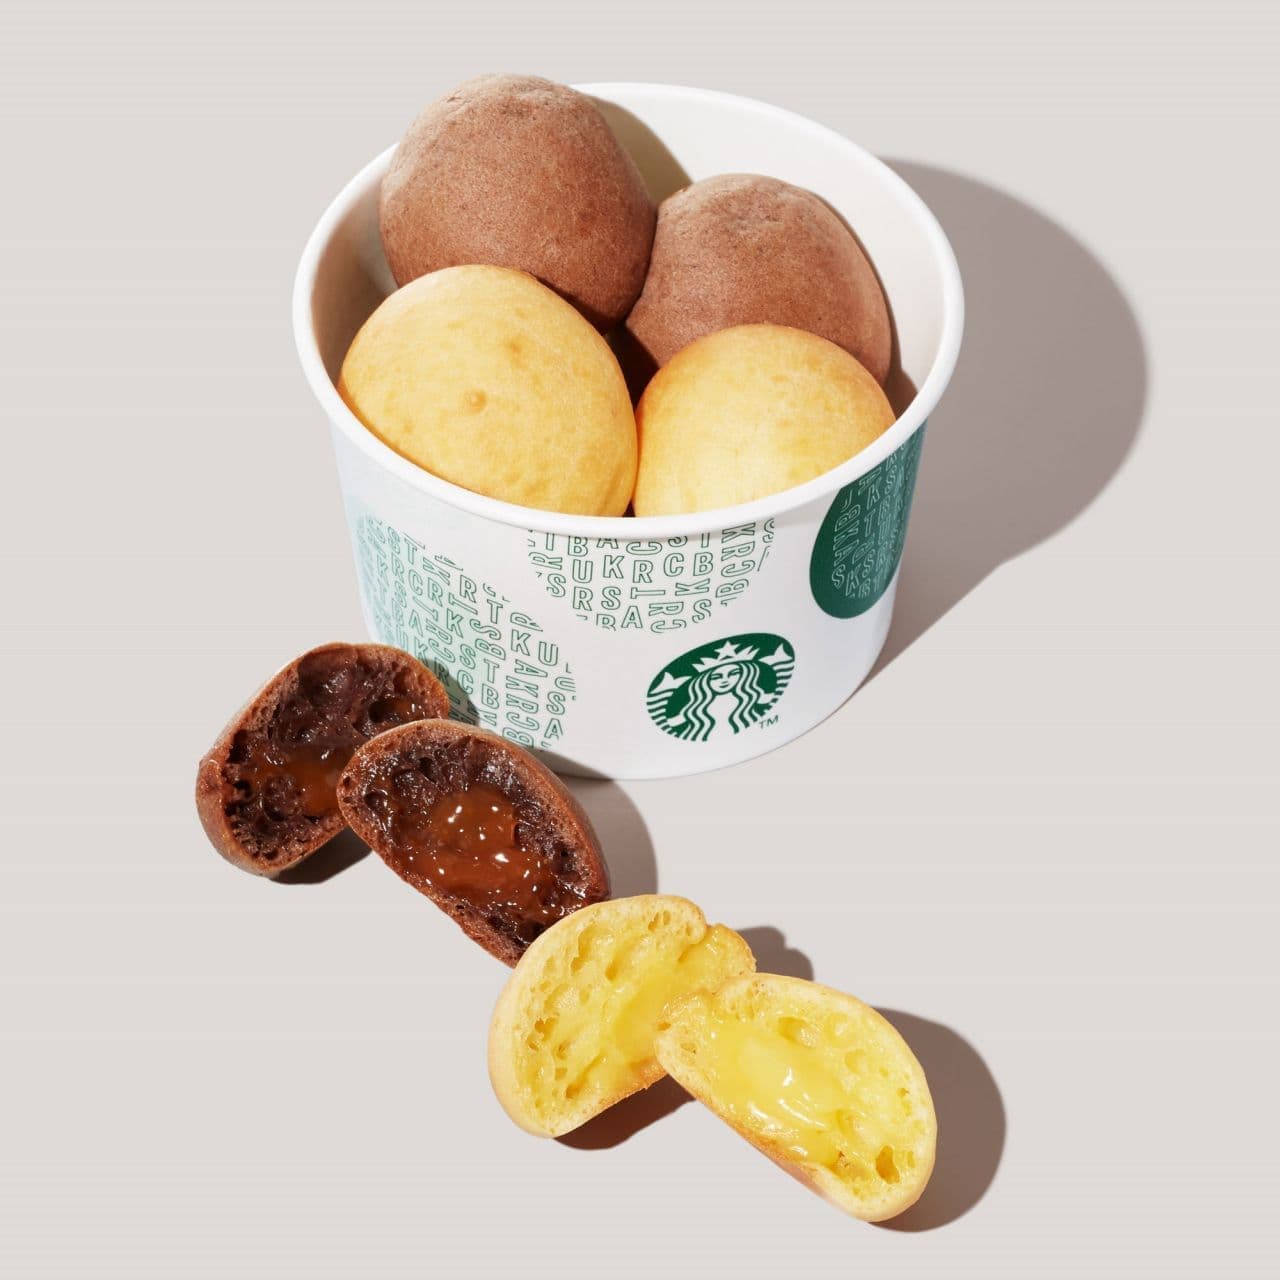 Starbucks "Mochiri Balls Banana & Caramel".